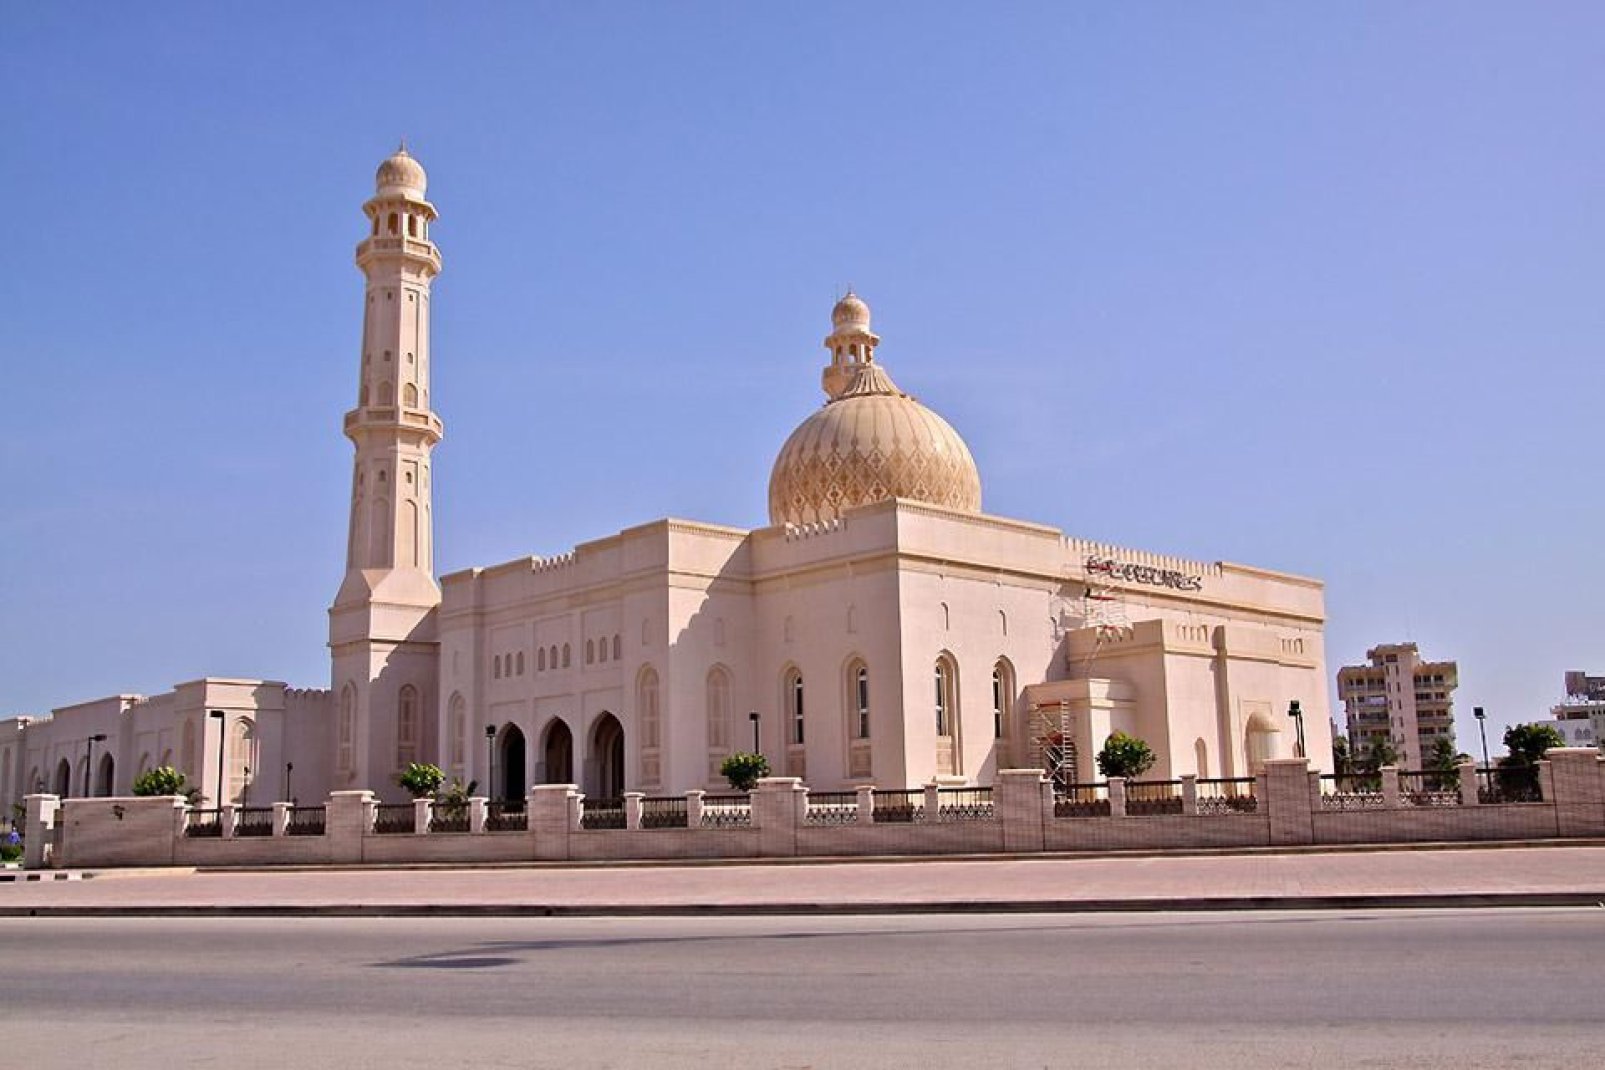 A superb mosque